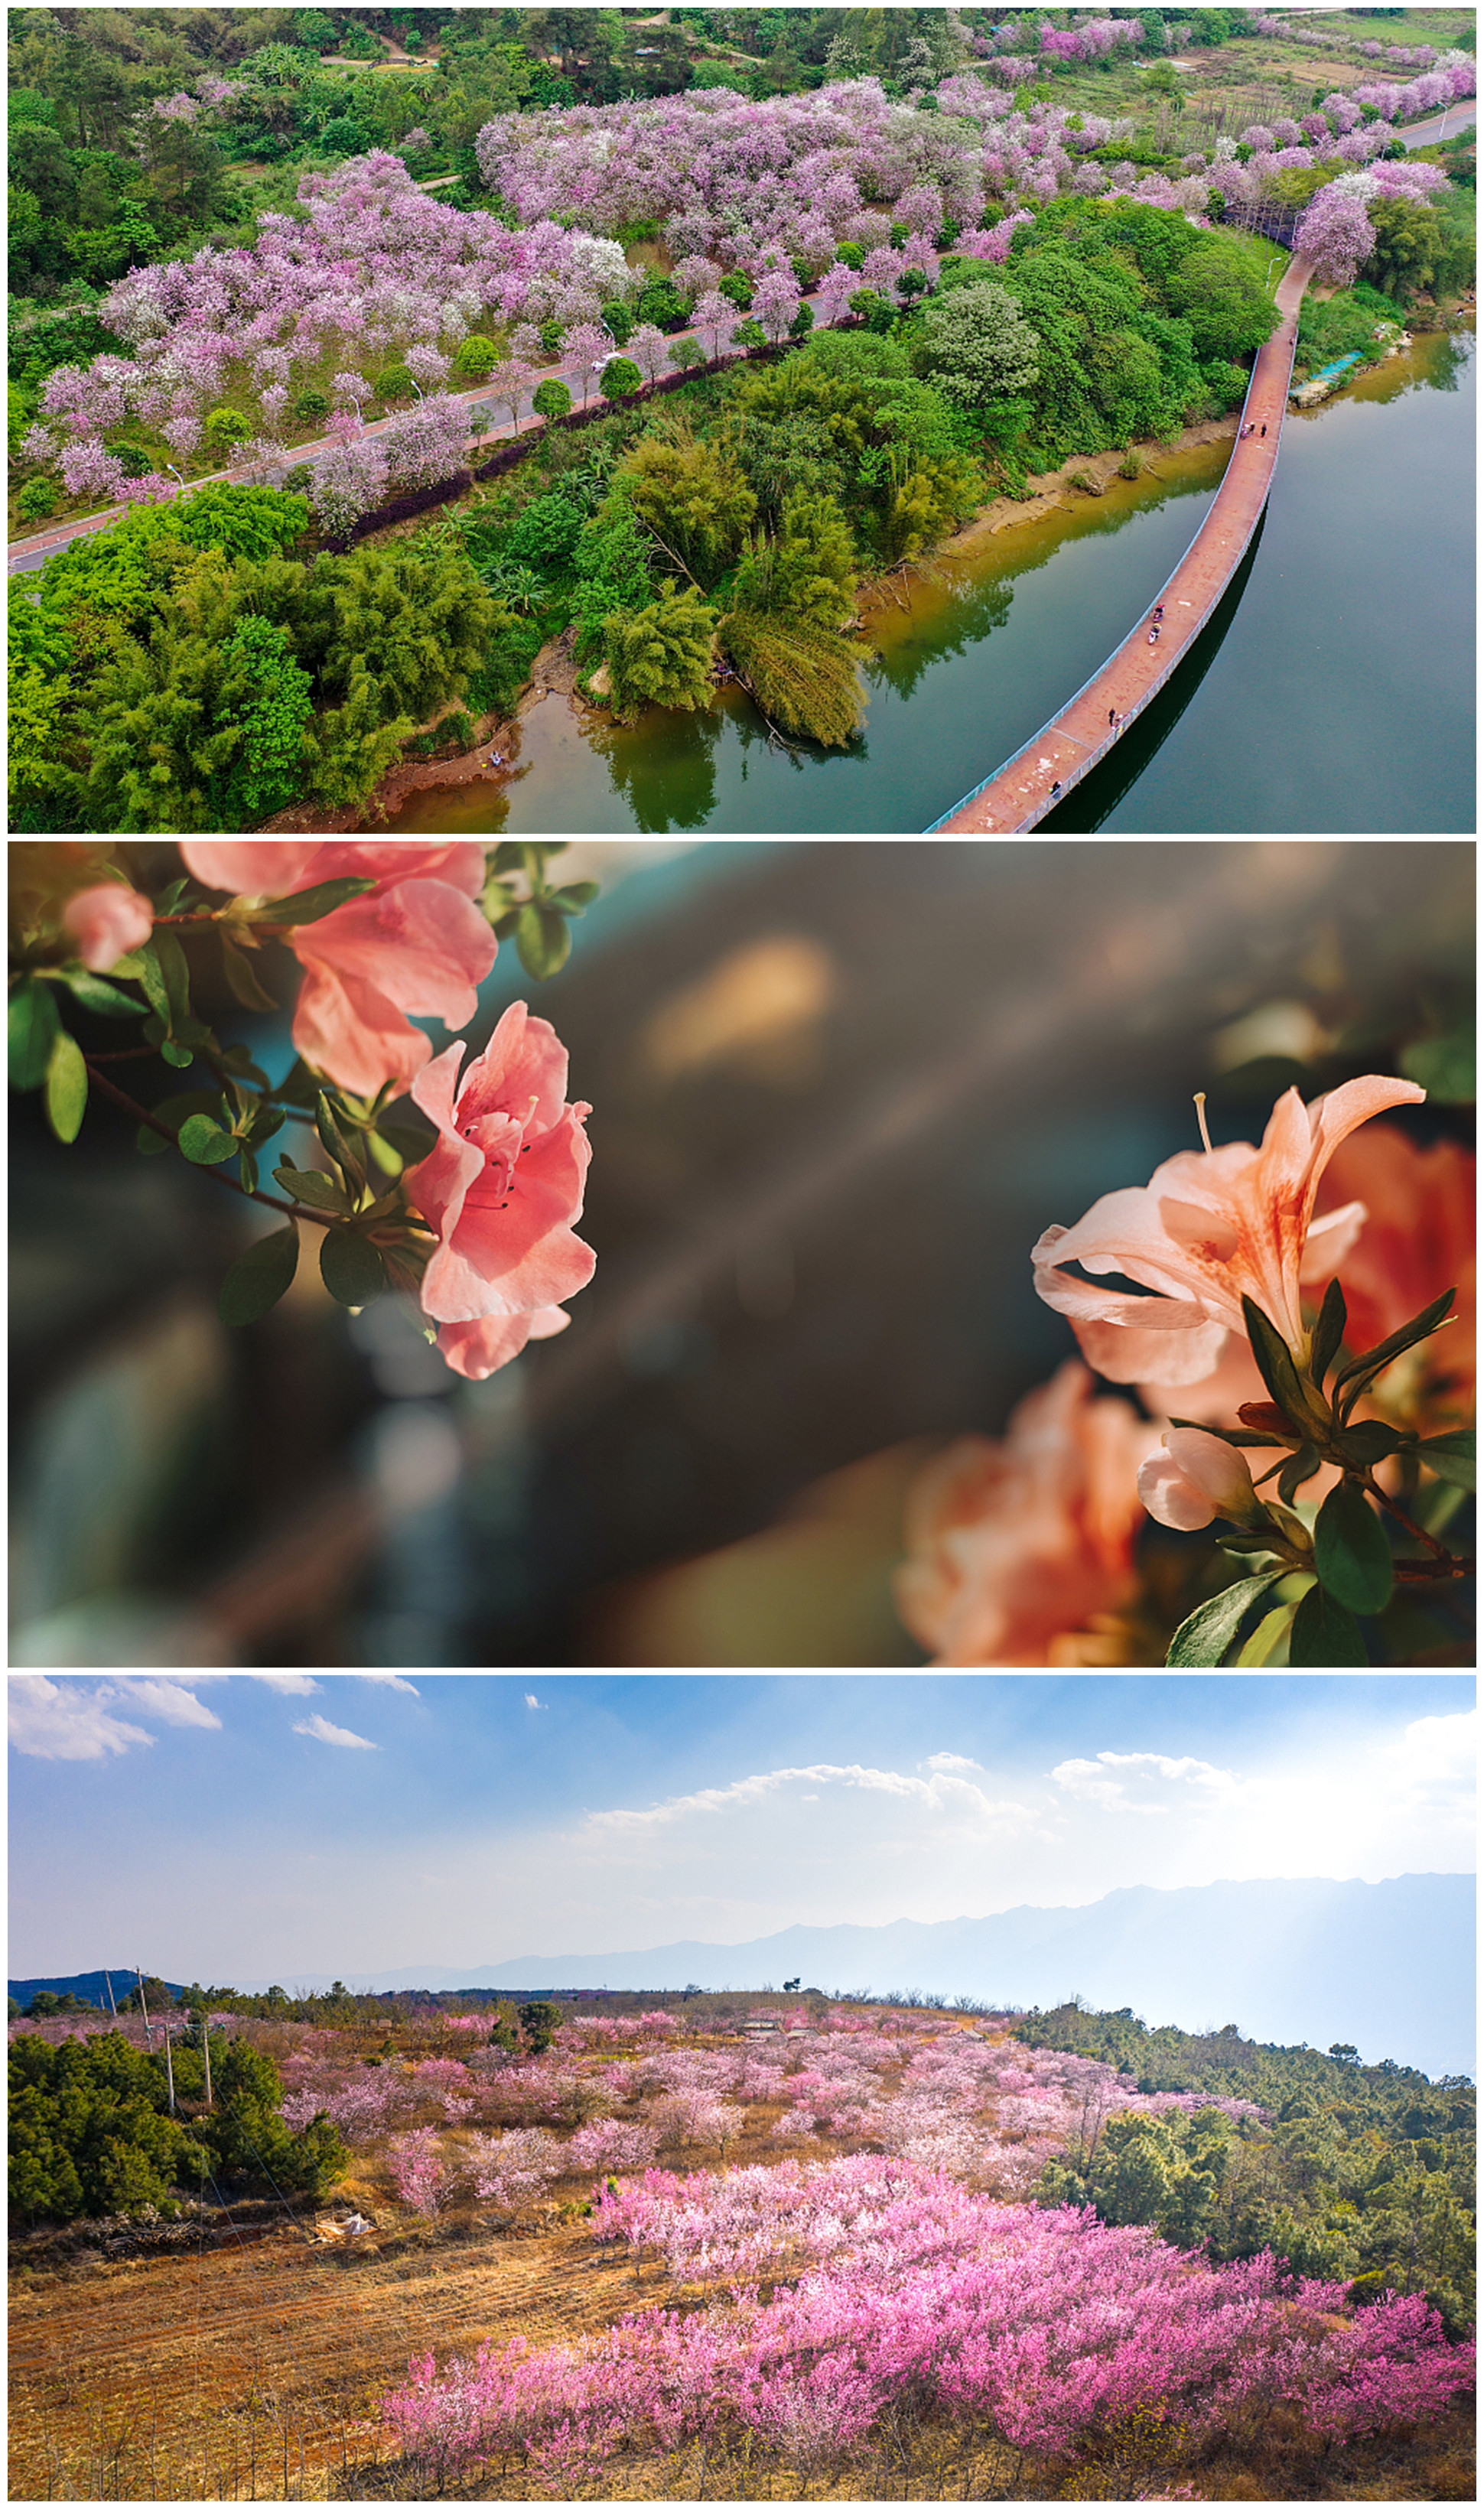 《春暖花开的中国》开播 绘就美丽中国春景图(图2)